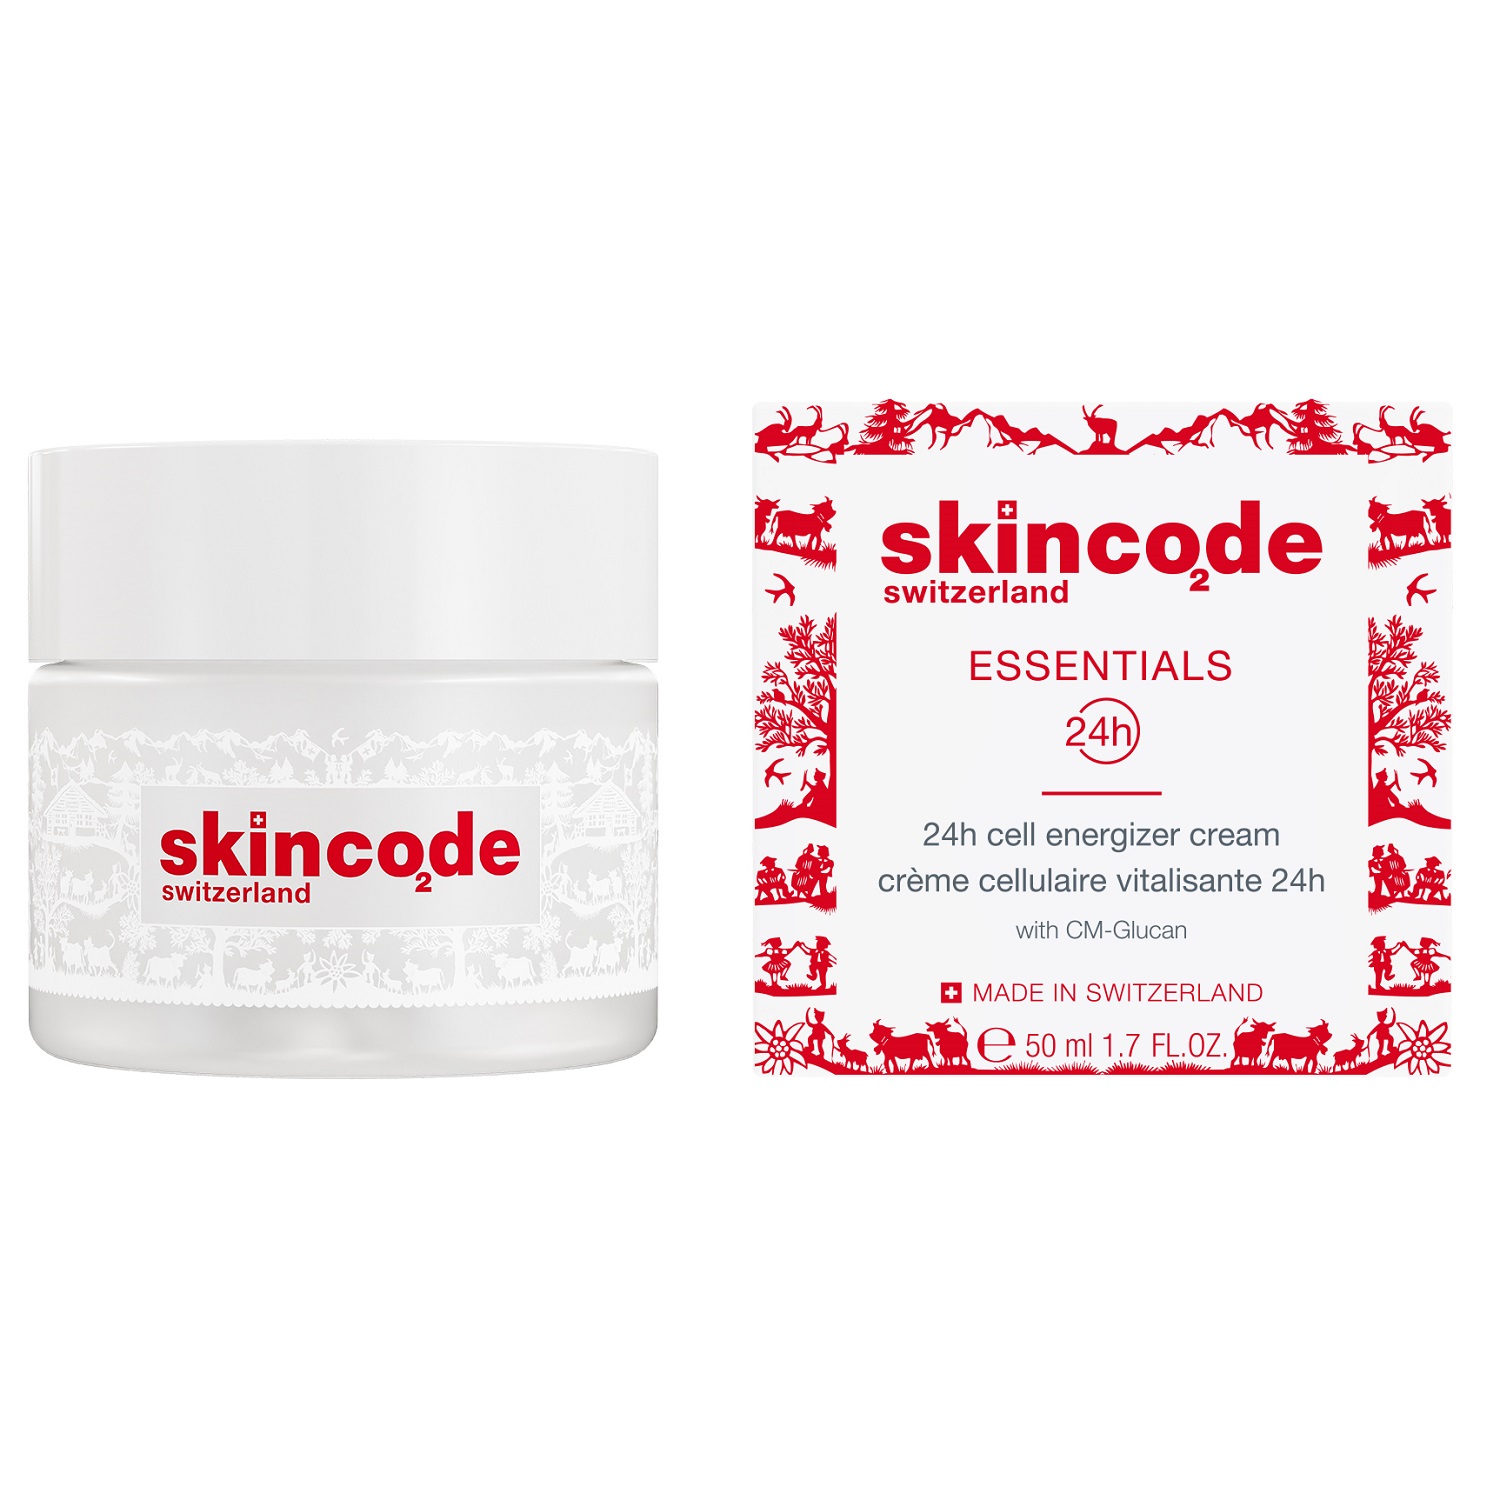 Skincode Энергетический клеточный крем для лица 24 часа в сутки, 50 мл (Skincode, Essentials 24h)